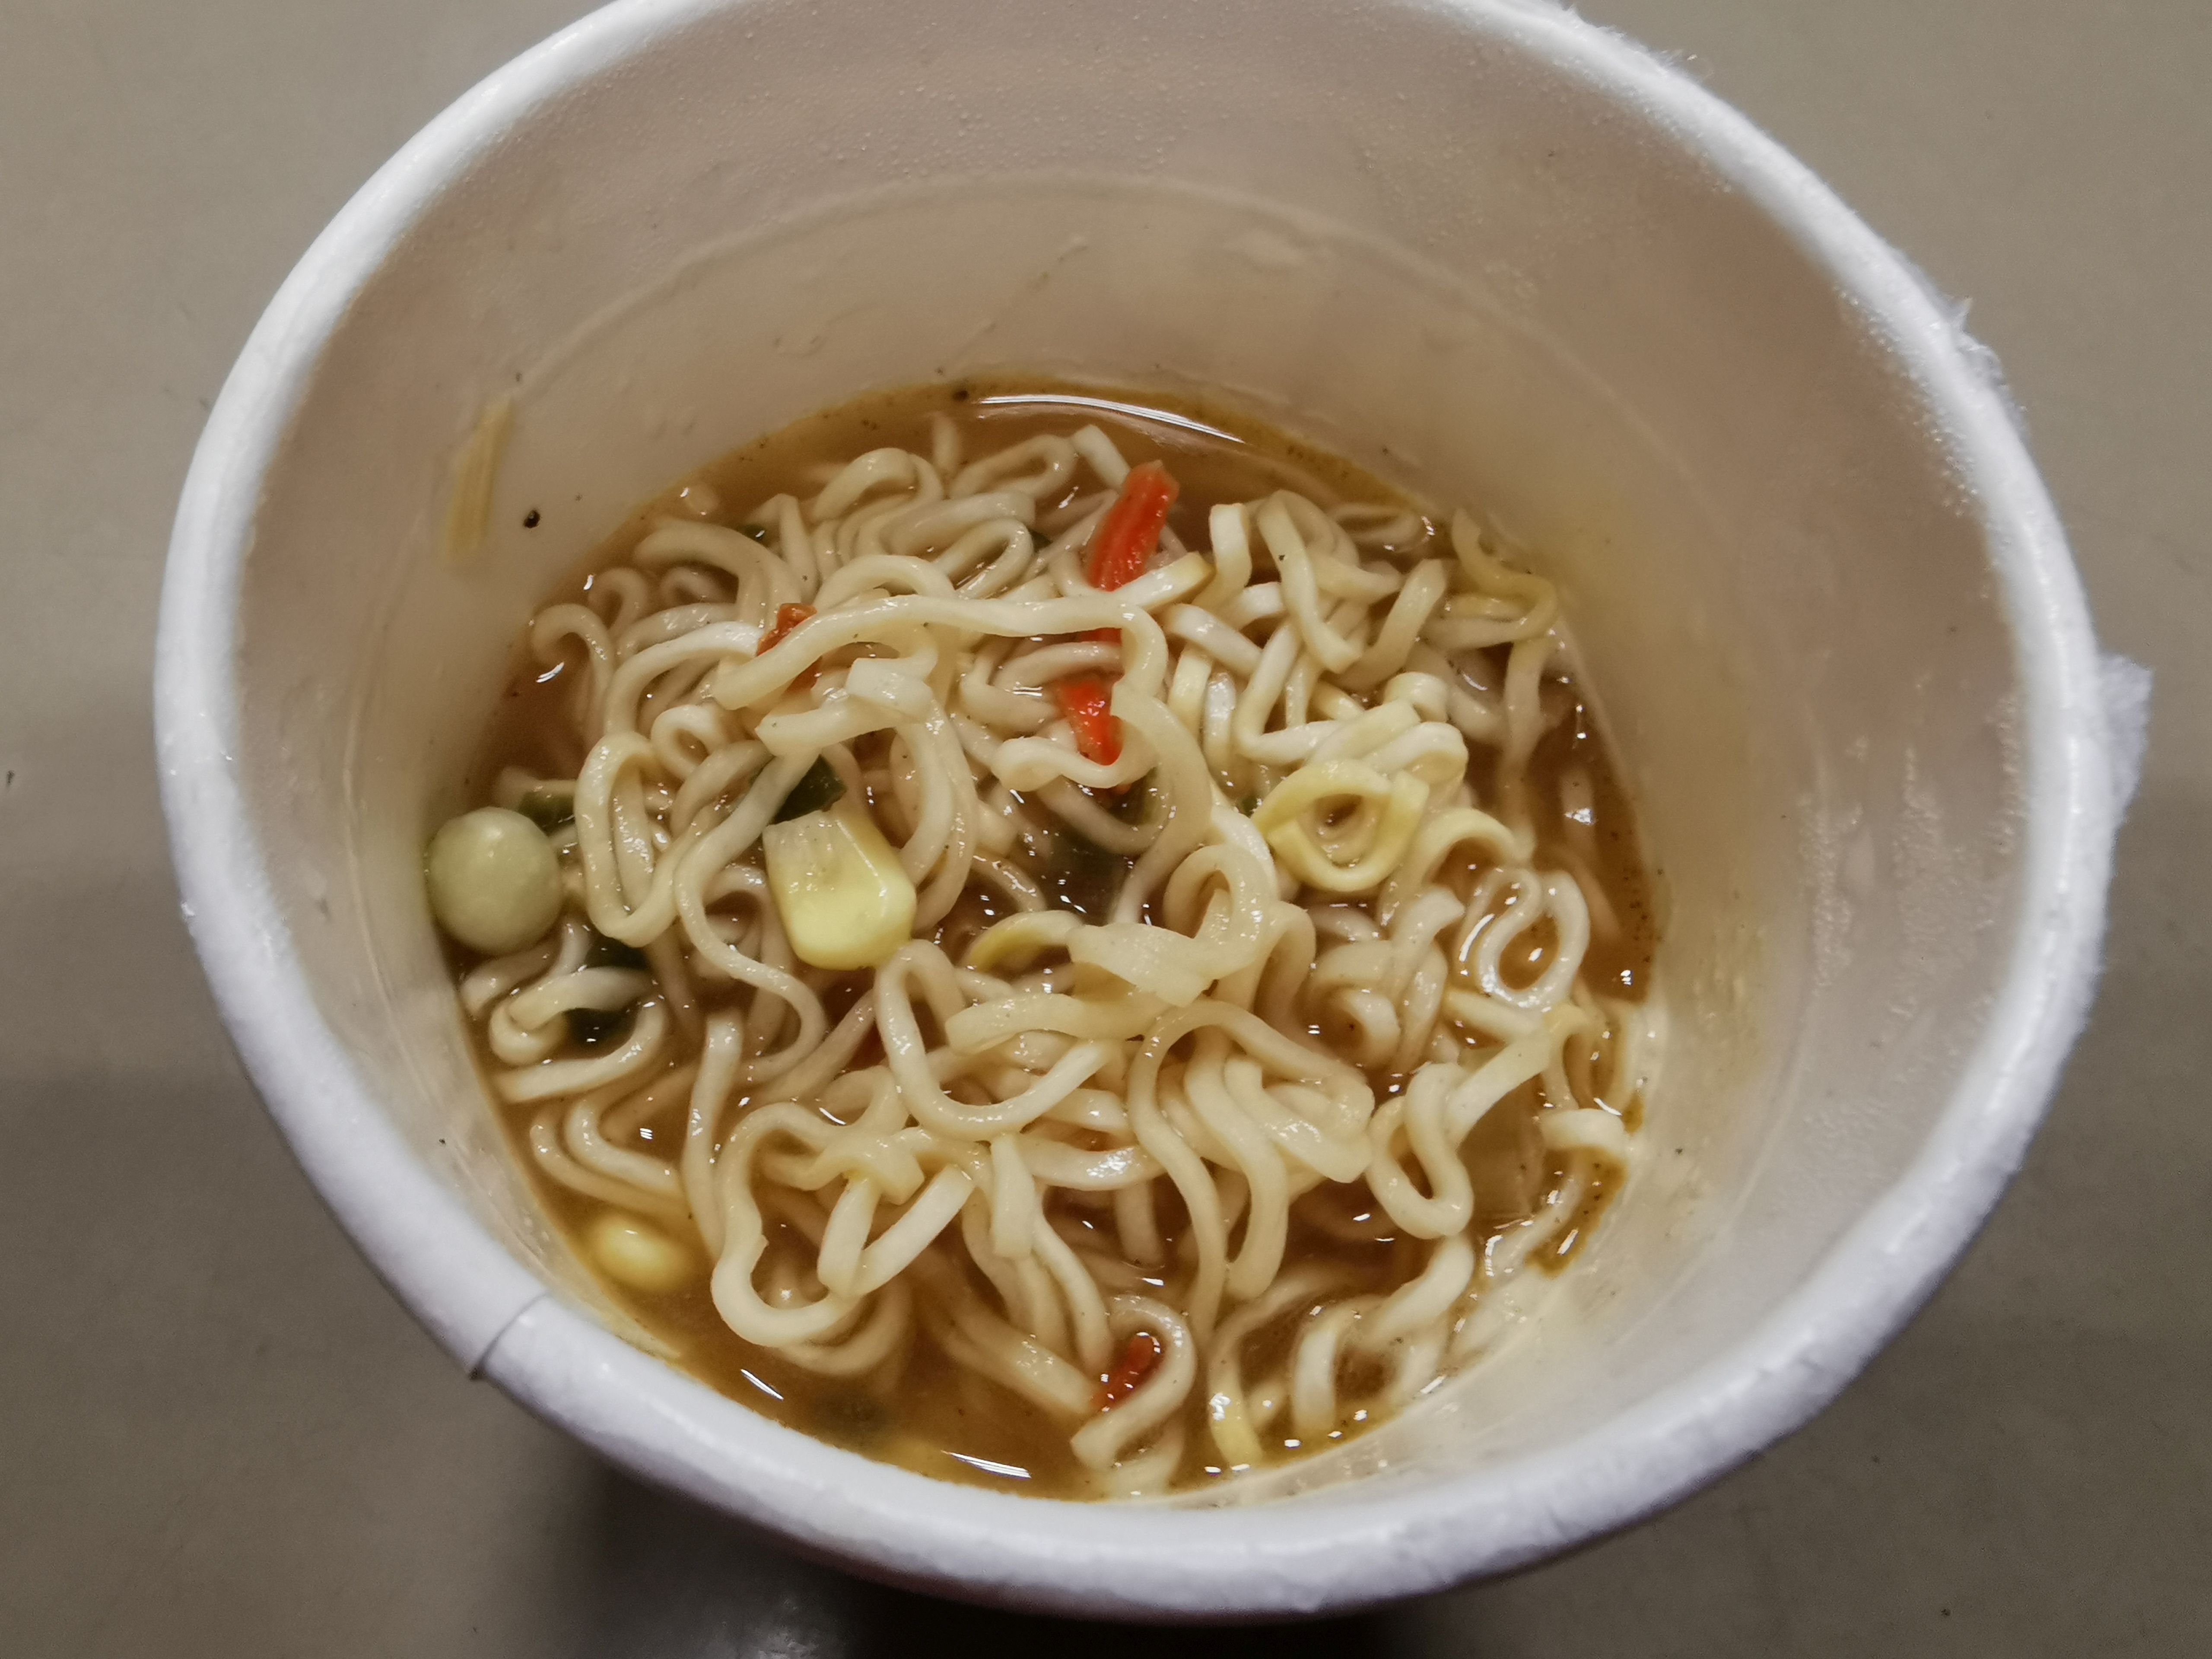 #2254: Rap Snacks "Icon Ramen Noodles Creamy Chicken Gumbo Flavor" Cup